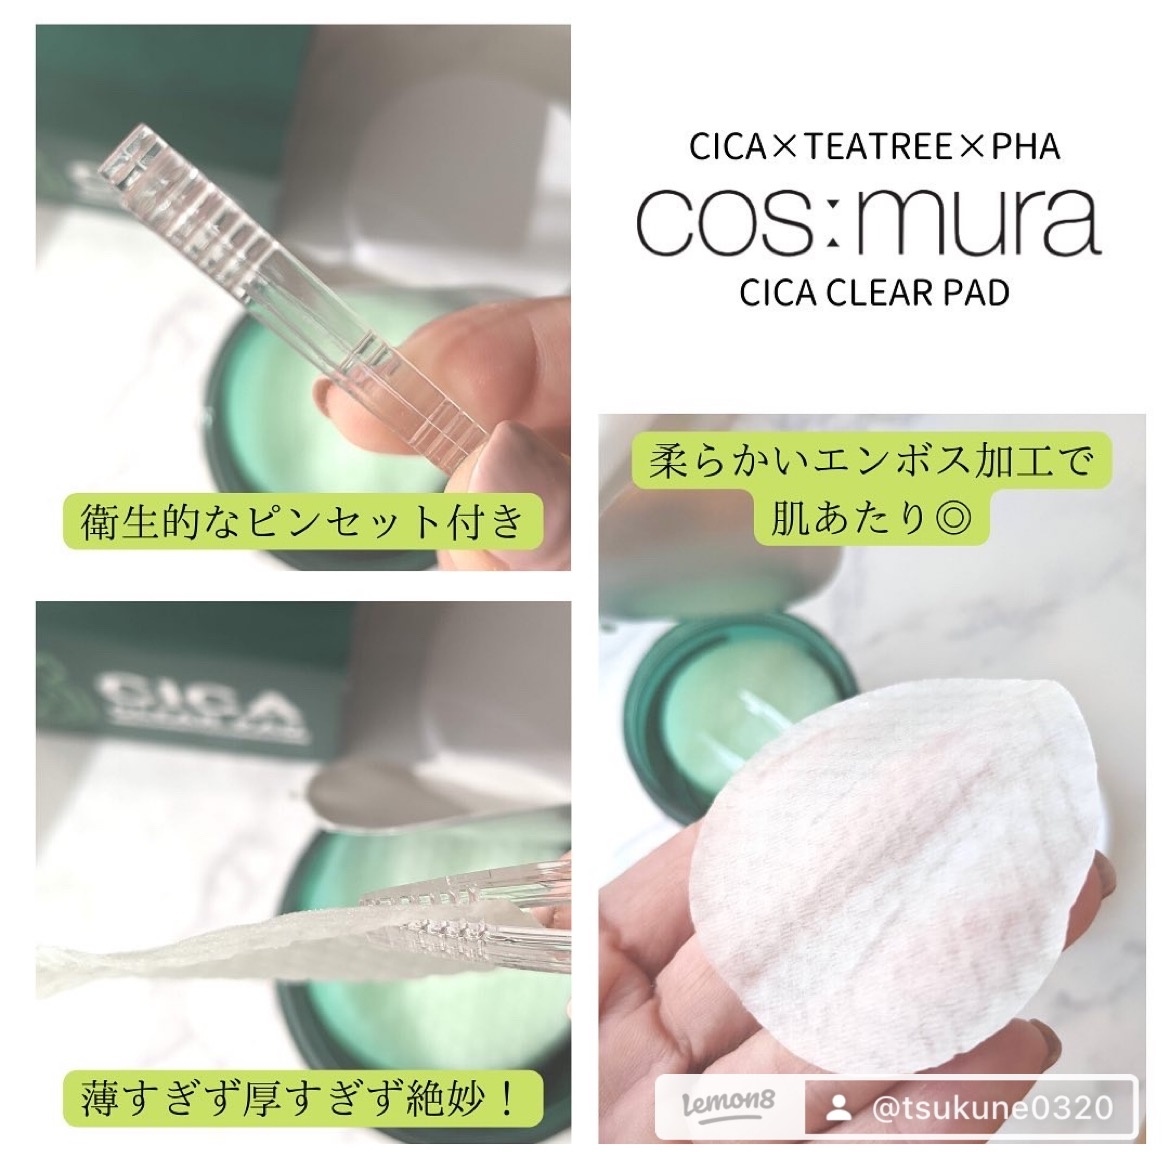 cosmura cica clear padを使ったつくねさんのクチコミ画像6